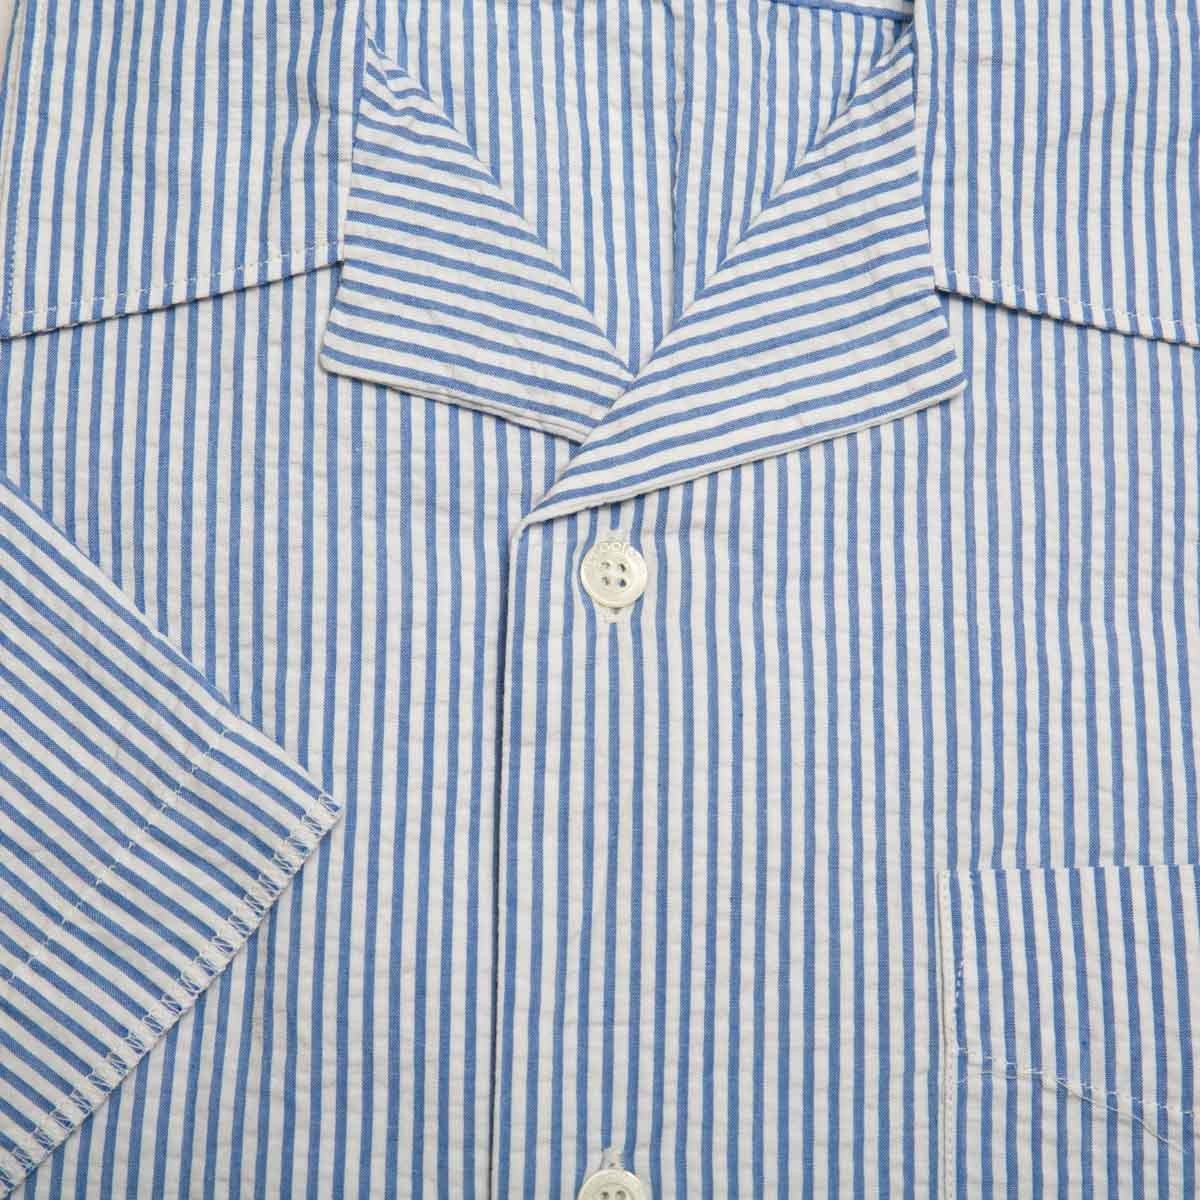 chemise-en-coton-bleue-blanc-a-rayures-manches-courtes-pour-homme-detail-tissu